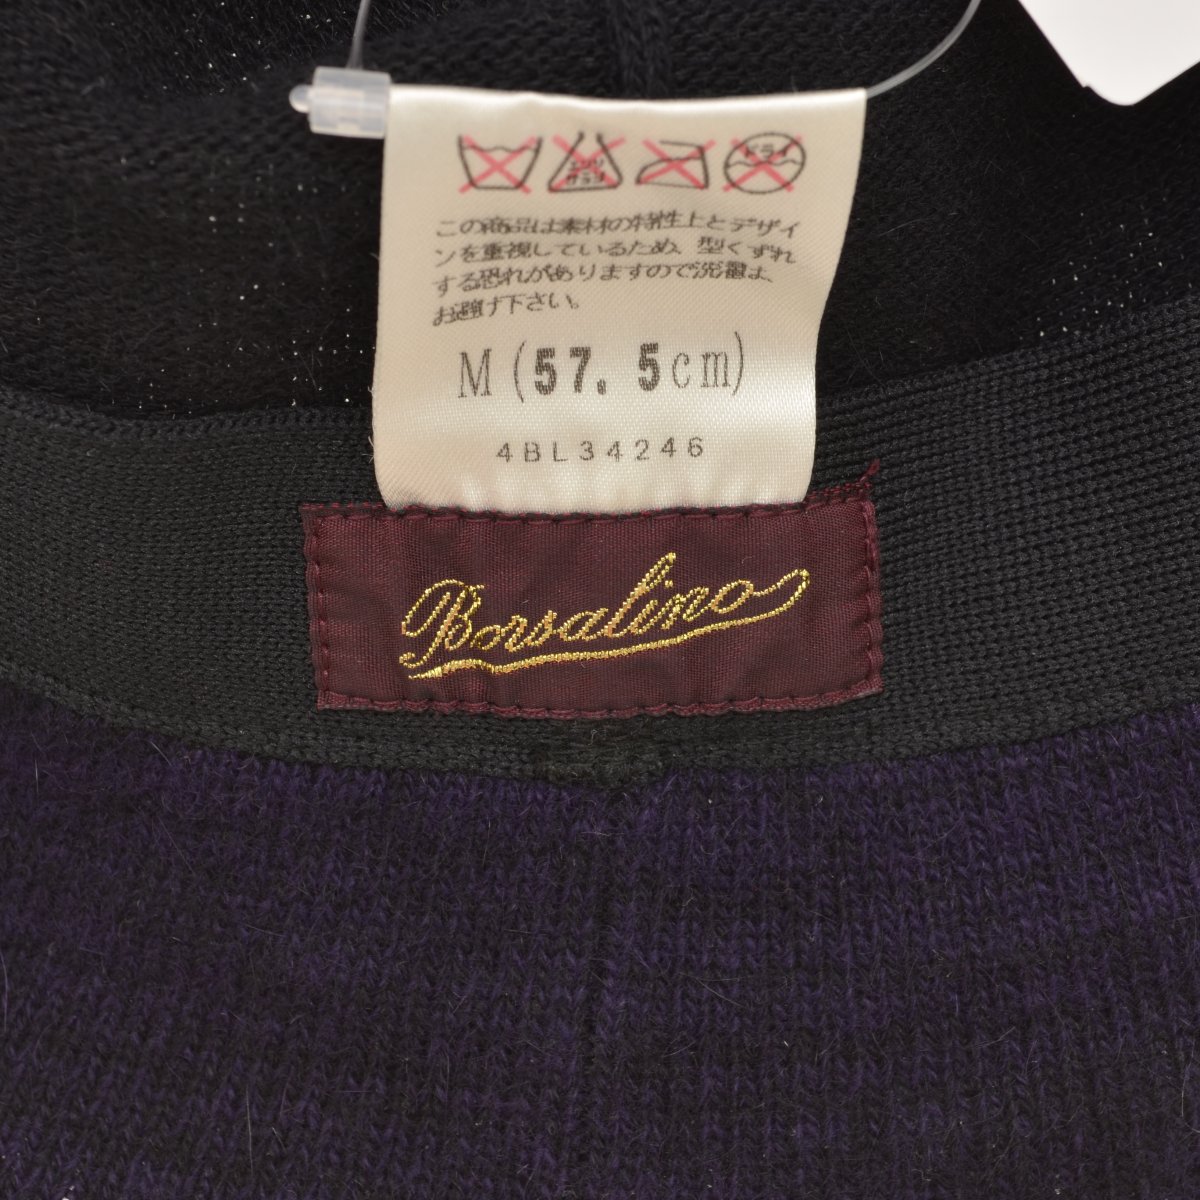 Borsalino / ボルサリーノ 日本製 アンゴラ混ニット ハット -ブランド古着の買取販売カンフル